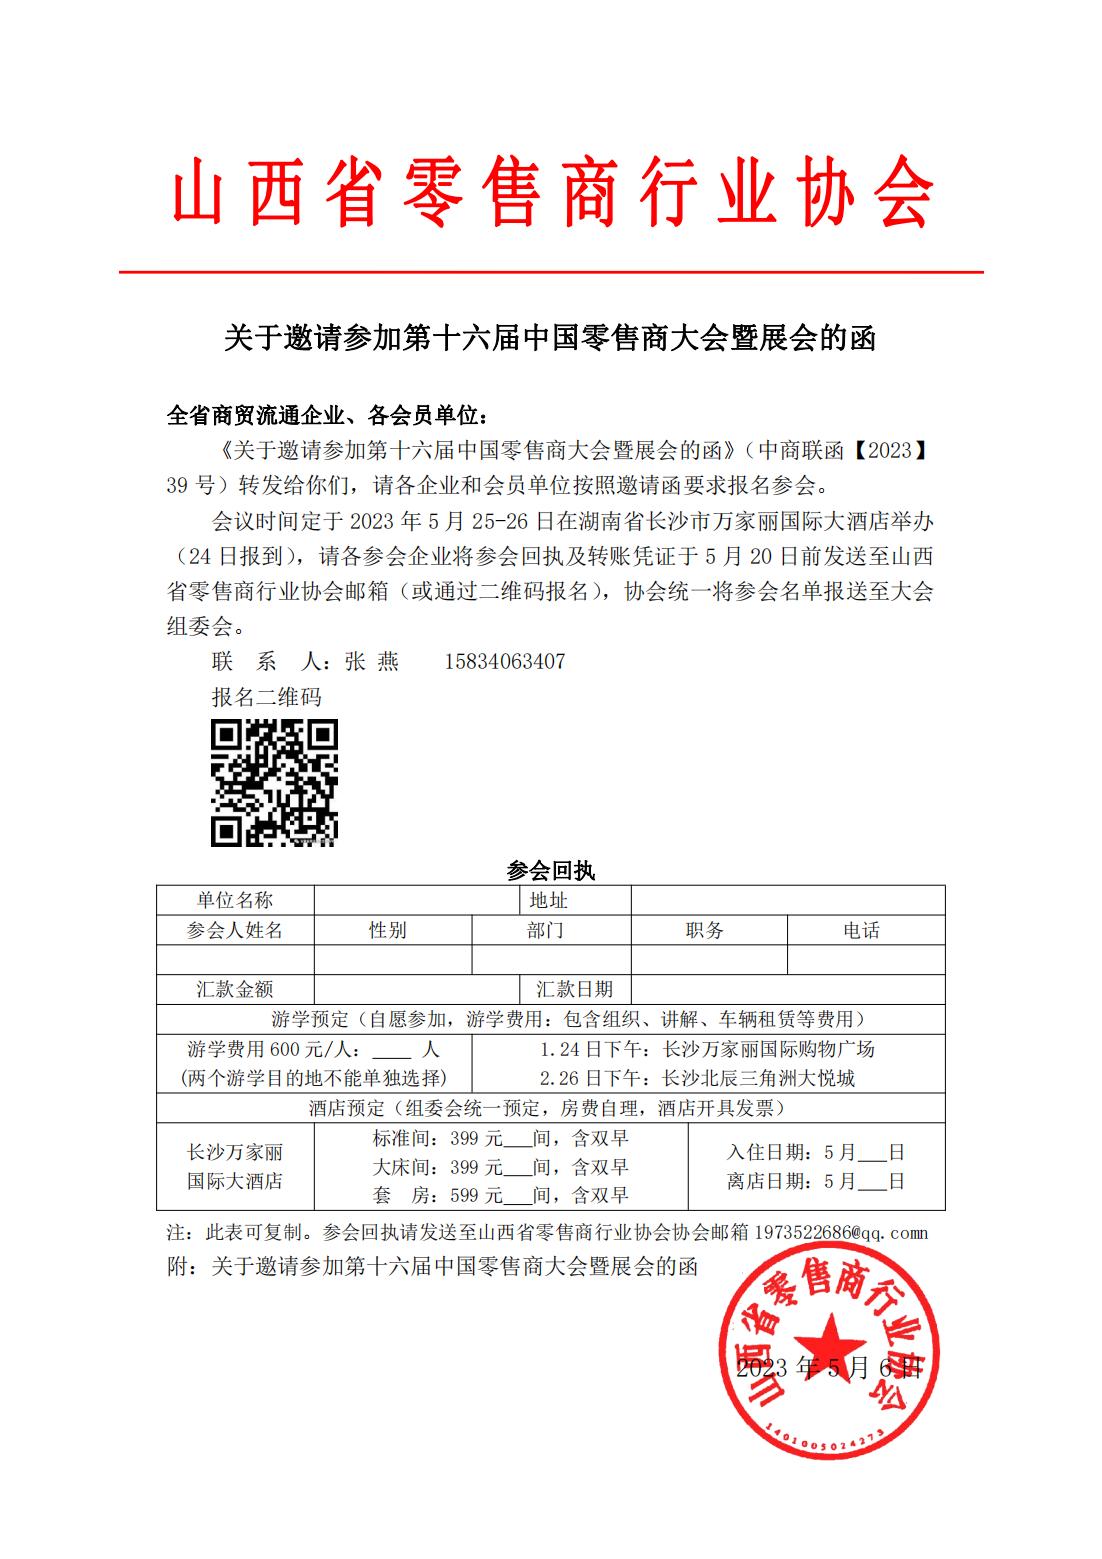 关于邀请参加第十六届中国零售商大会的函_00.jpg